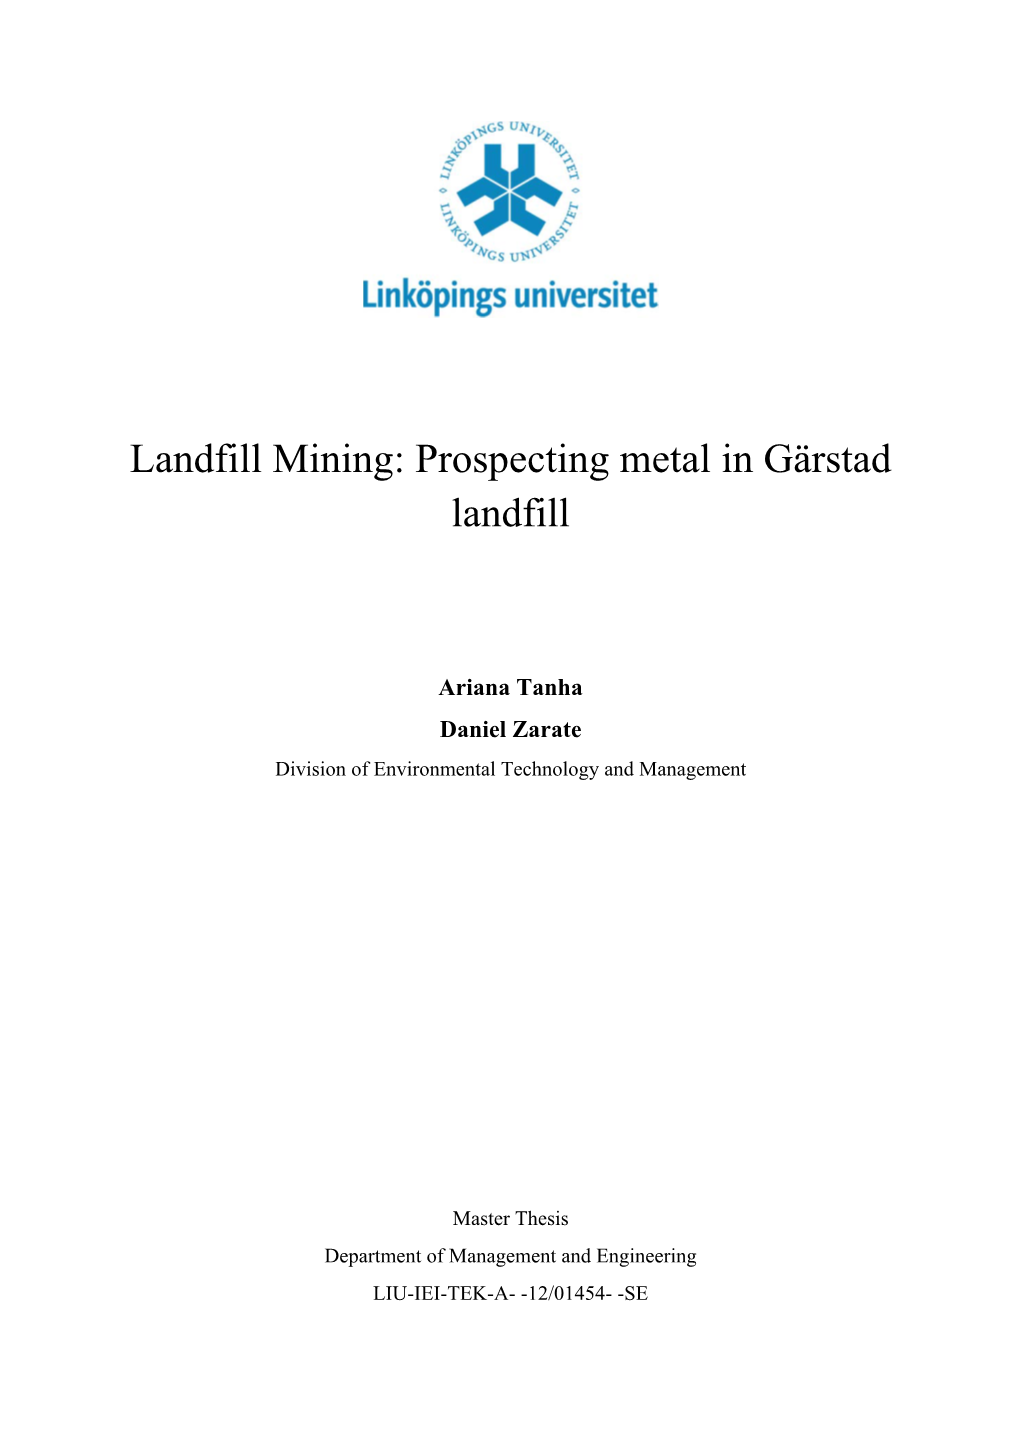 Landfill Mining: Prospecting Metal in Gärstad Landfill